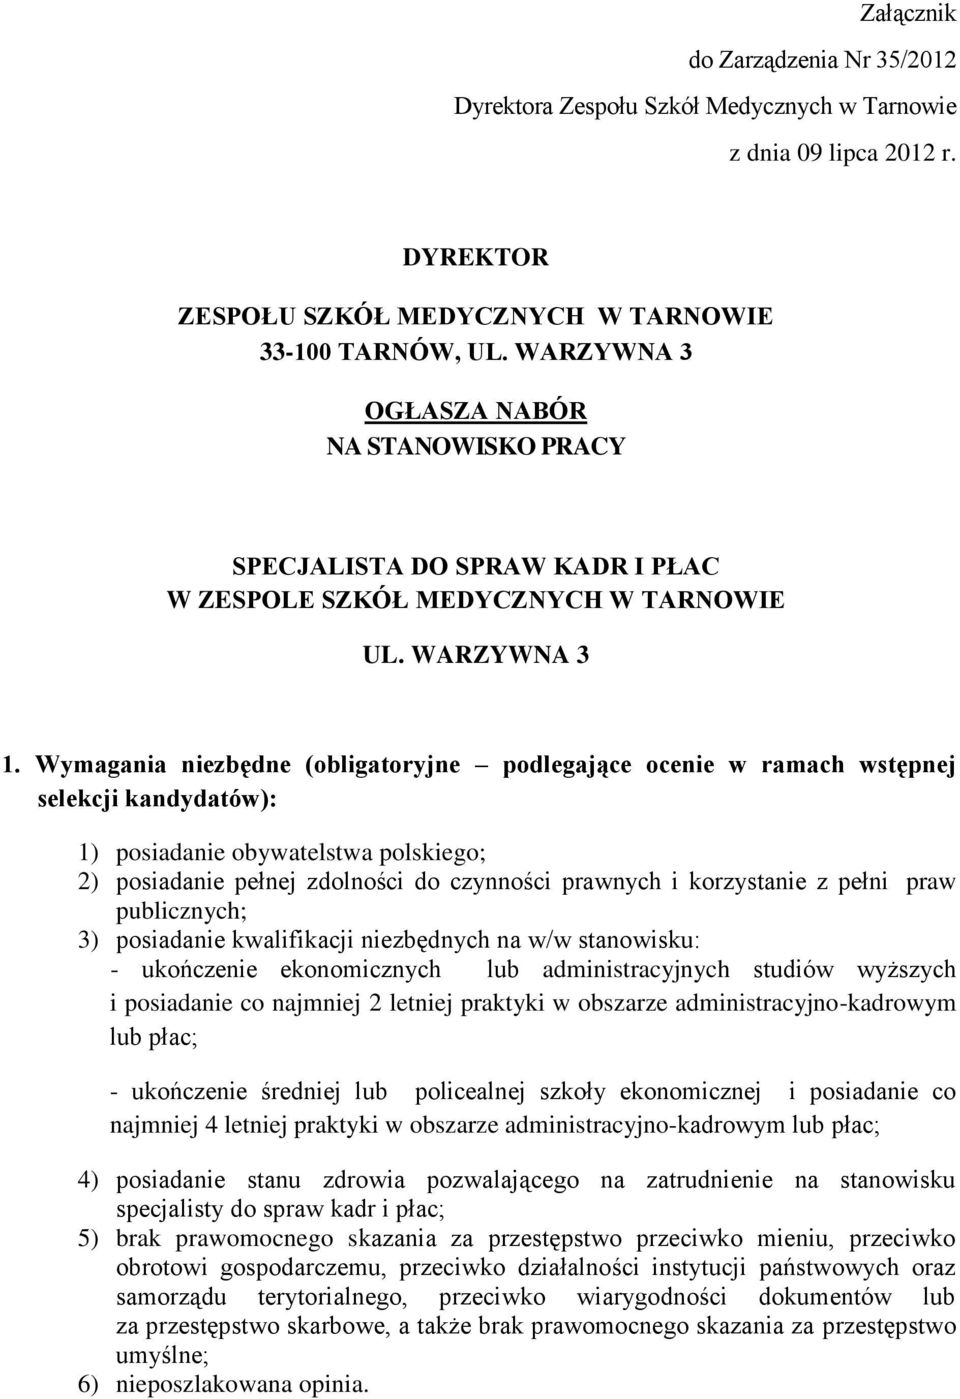 Wymagania niezbędne (obligatoryjne podlegające ocenie w ramach wstępnej selekcji kandydatów): 1) posiadanie obywatelstwa polskiego; 2) posiadanie pełnej zdolności do czynności prawnych i korzystanie